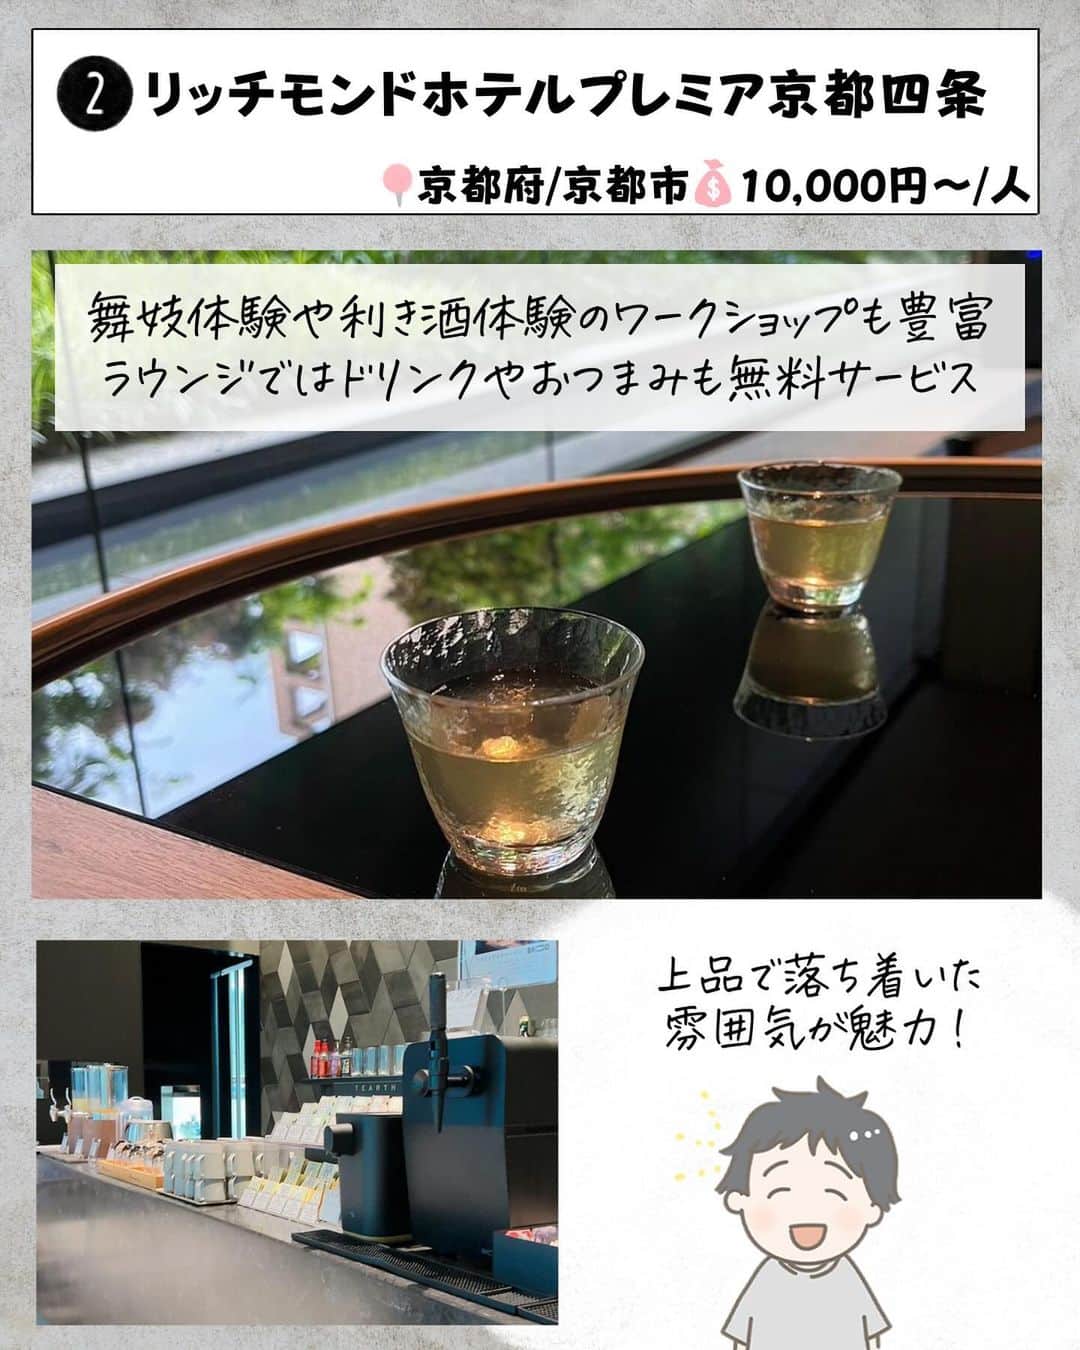 ぴち家さんのインスタグラム写真 - (ぴち家Instagram)「. お得を極めて旅に生きる夫婦、 ぴち家（@travelife_couple）です。 ⁡ 今回は「本当はヒミツにしたいホテル」の特集です。  静かな里山の中で日頃の疲れを癒やしたり、 京都ならではの舞妓体験ができるホテルなど 普段はできないような体験が楽しめちゃう！ 本当はヒミツにしたいホテルを紹介するよ✨  1年の自分へのご褒美に素敵なホテルに泊まるのもありだよね～✨  みんなもオススメホテルがあったらコメントで教えてね☺️ ✨  ⁡ ※ホテル価格は楽天トラベルで検索した最安値を記載しています。 時期により変動があるため参考程度としてください！ ⁡ 【𝕚𝕟𝕗𝕠𝕣𝕞𝕒𝕥𝕚𝕠𝕟𓏗𓏗】 ❶ ゆづくしSalon一の坊 📍宮城県仙台市青葉区作並長原3 （写真:@aikaten1210様より）  ❷ リッチモンドホテルプレミア京都四条 📍京都府京都市下京区四条通油小路東入傘鉾町50 ⁡（写真:@chanmimnahc様より）  ❸ ガーデンテラス長崎ホテル＆リゾート 📍長崎県長崎市秋月町2-3 （写真:@mj811117様より）  ❹ 番場おおそね 📍埼玉県秩父市番場19-2 ⁡（写真:@rk_osw様より）  ➎ 石和名湯館 糸柳 📍山梨県笛吹市石和町駅前13-8 （写真:@2kriyo2様より）  ❻ あらたし　みなかみ 📍群馬県利根郡みなかみ町湯原740-3 ⁡（写真:@jaiko_gogo様より）  ➐  GALLERIA MIDOBARU （ガレリア御堂原） 📍大分県別府市堀田６組 （写真:@84saki25様より）  ーーーーーーーーーーーーーーーーーー✽ ⁡ ぴち家（@travelife_couple）って？ ⁡ バン🚐で旅してホテルやスポット巡り！ お得旅行が大好きな夫婦です。 ⁡ ✔︎旅行先やホテル ✔︎観光スポット・グルメまとめ ✔︎旅費を作るためのお金の話を発信中𓂃𓈒𓏸 ⁡ ⁡ また本アカウント以外にも、以下を運営しております。 少しでも役立ちそう、応援してもいいと思って 頂ける方はフォローよろしくお願いしますˎˊ˗ ⁡ 📷日常・写真メインの旅行情報 →@travelife_diary （フォロワー4万超） ⁡ 🔰初心者必見のお金・投資情報 →@yuki_moneylife （フォロワー11万超） ⁡ 🎥旅行ムービー発信のTiktok → @ぴち家（フォロワー2.5万超） ⁡ 【テーマ】 「旅行をもっと身近に✈️」 これまで厳しい状況が続いてきた旅行・飲食業界を盛り上げたい！ より多くの人にワクワクする旅行先を知って もらえるよう、またお得に旅行が出来るよう、 夫婦二人で発信を頑張っています。 　 【お願い】 応援して頂けるフォロワーの皆様、及び 取材させて頂いている企業様にはいつも感謝しております！🙇‍♂️🙇‍♀️ お仕事依頼も承っておりますので、 応援頂ける企業・自治体様はぜひ プロフィールのお問合せよりご連絡お願いします。 ⁡ ぴち家(@travelife_couple) ⁡ ✽ーーーーーーーーーーーーーーーーー ⁡ #ゆづくしSalon一の坊 #リッチモンドホテルプレミア京都四条 #ガーデンテラス長崎ホテルアンドリゾート #番場おおそね #石和名湯館糸柳 #あらたしみなかみ #ガレリア御堂原 #おすすめホテル #ぴちホテルまとめ」12月14日 20時00分 - travelife_couple